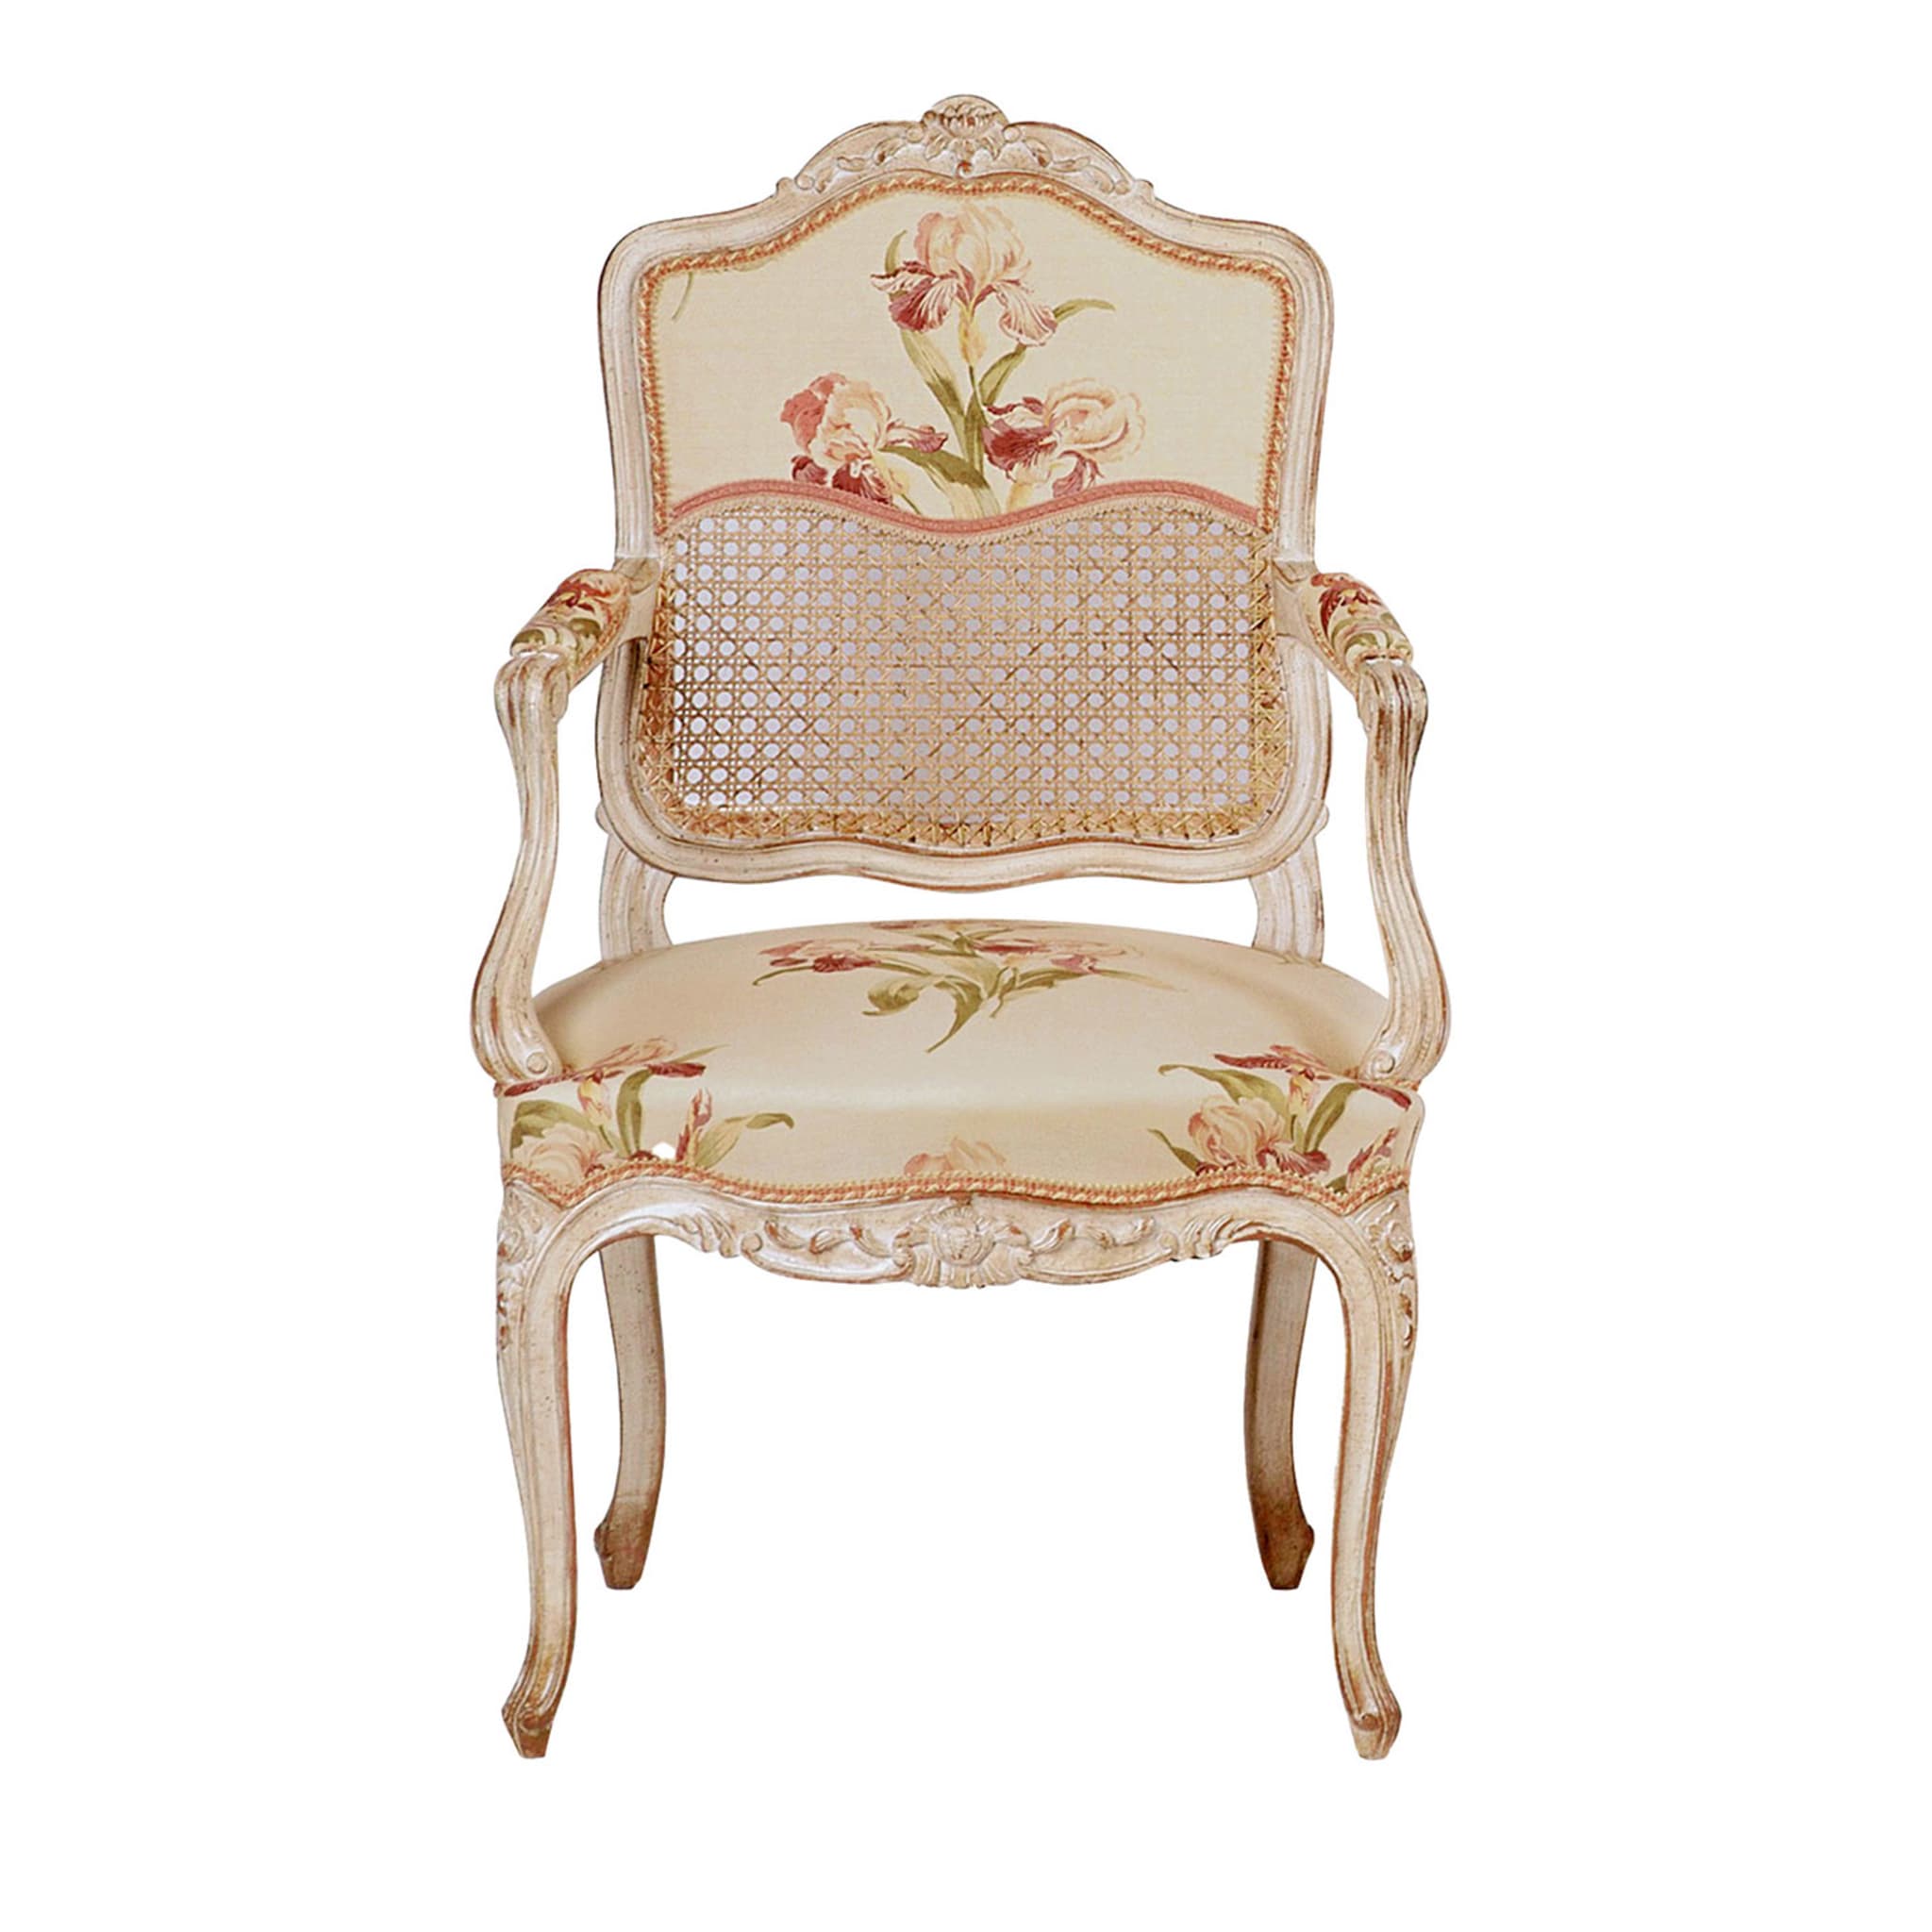 Chaise blanche florale de style Louis XV #1 - Vue principale